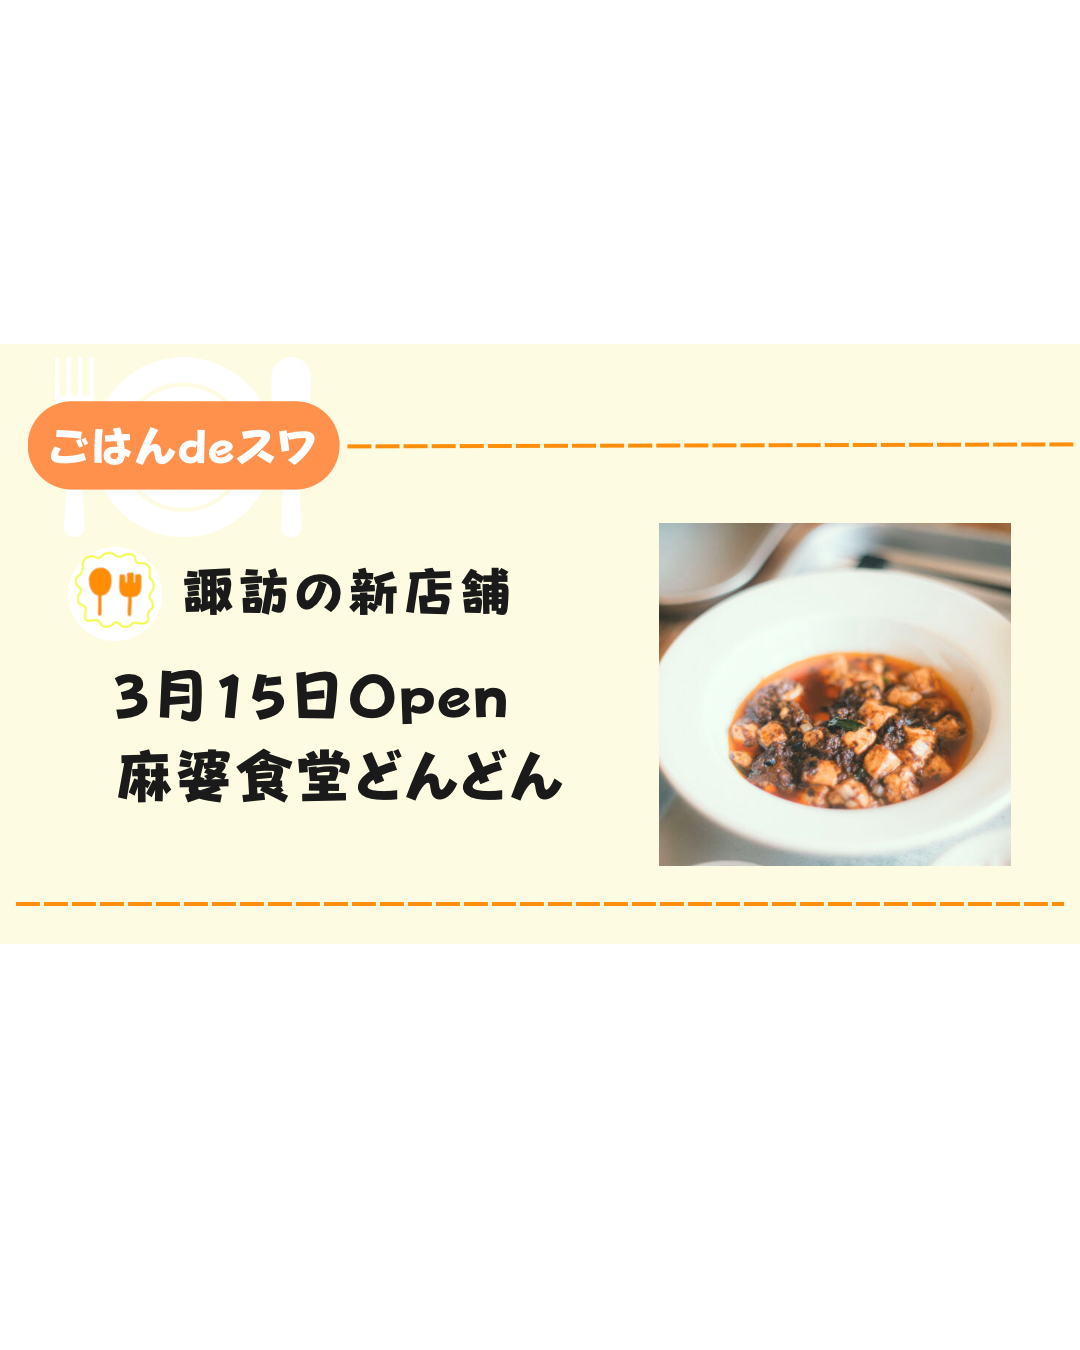 【3月15日】諏訪市にオープンする「麻婆食堂どんどん」について